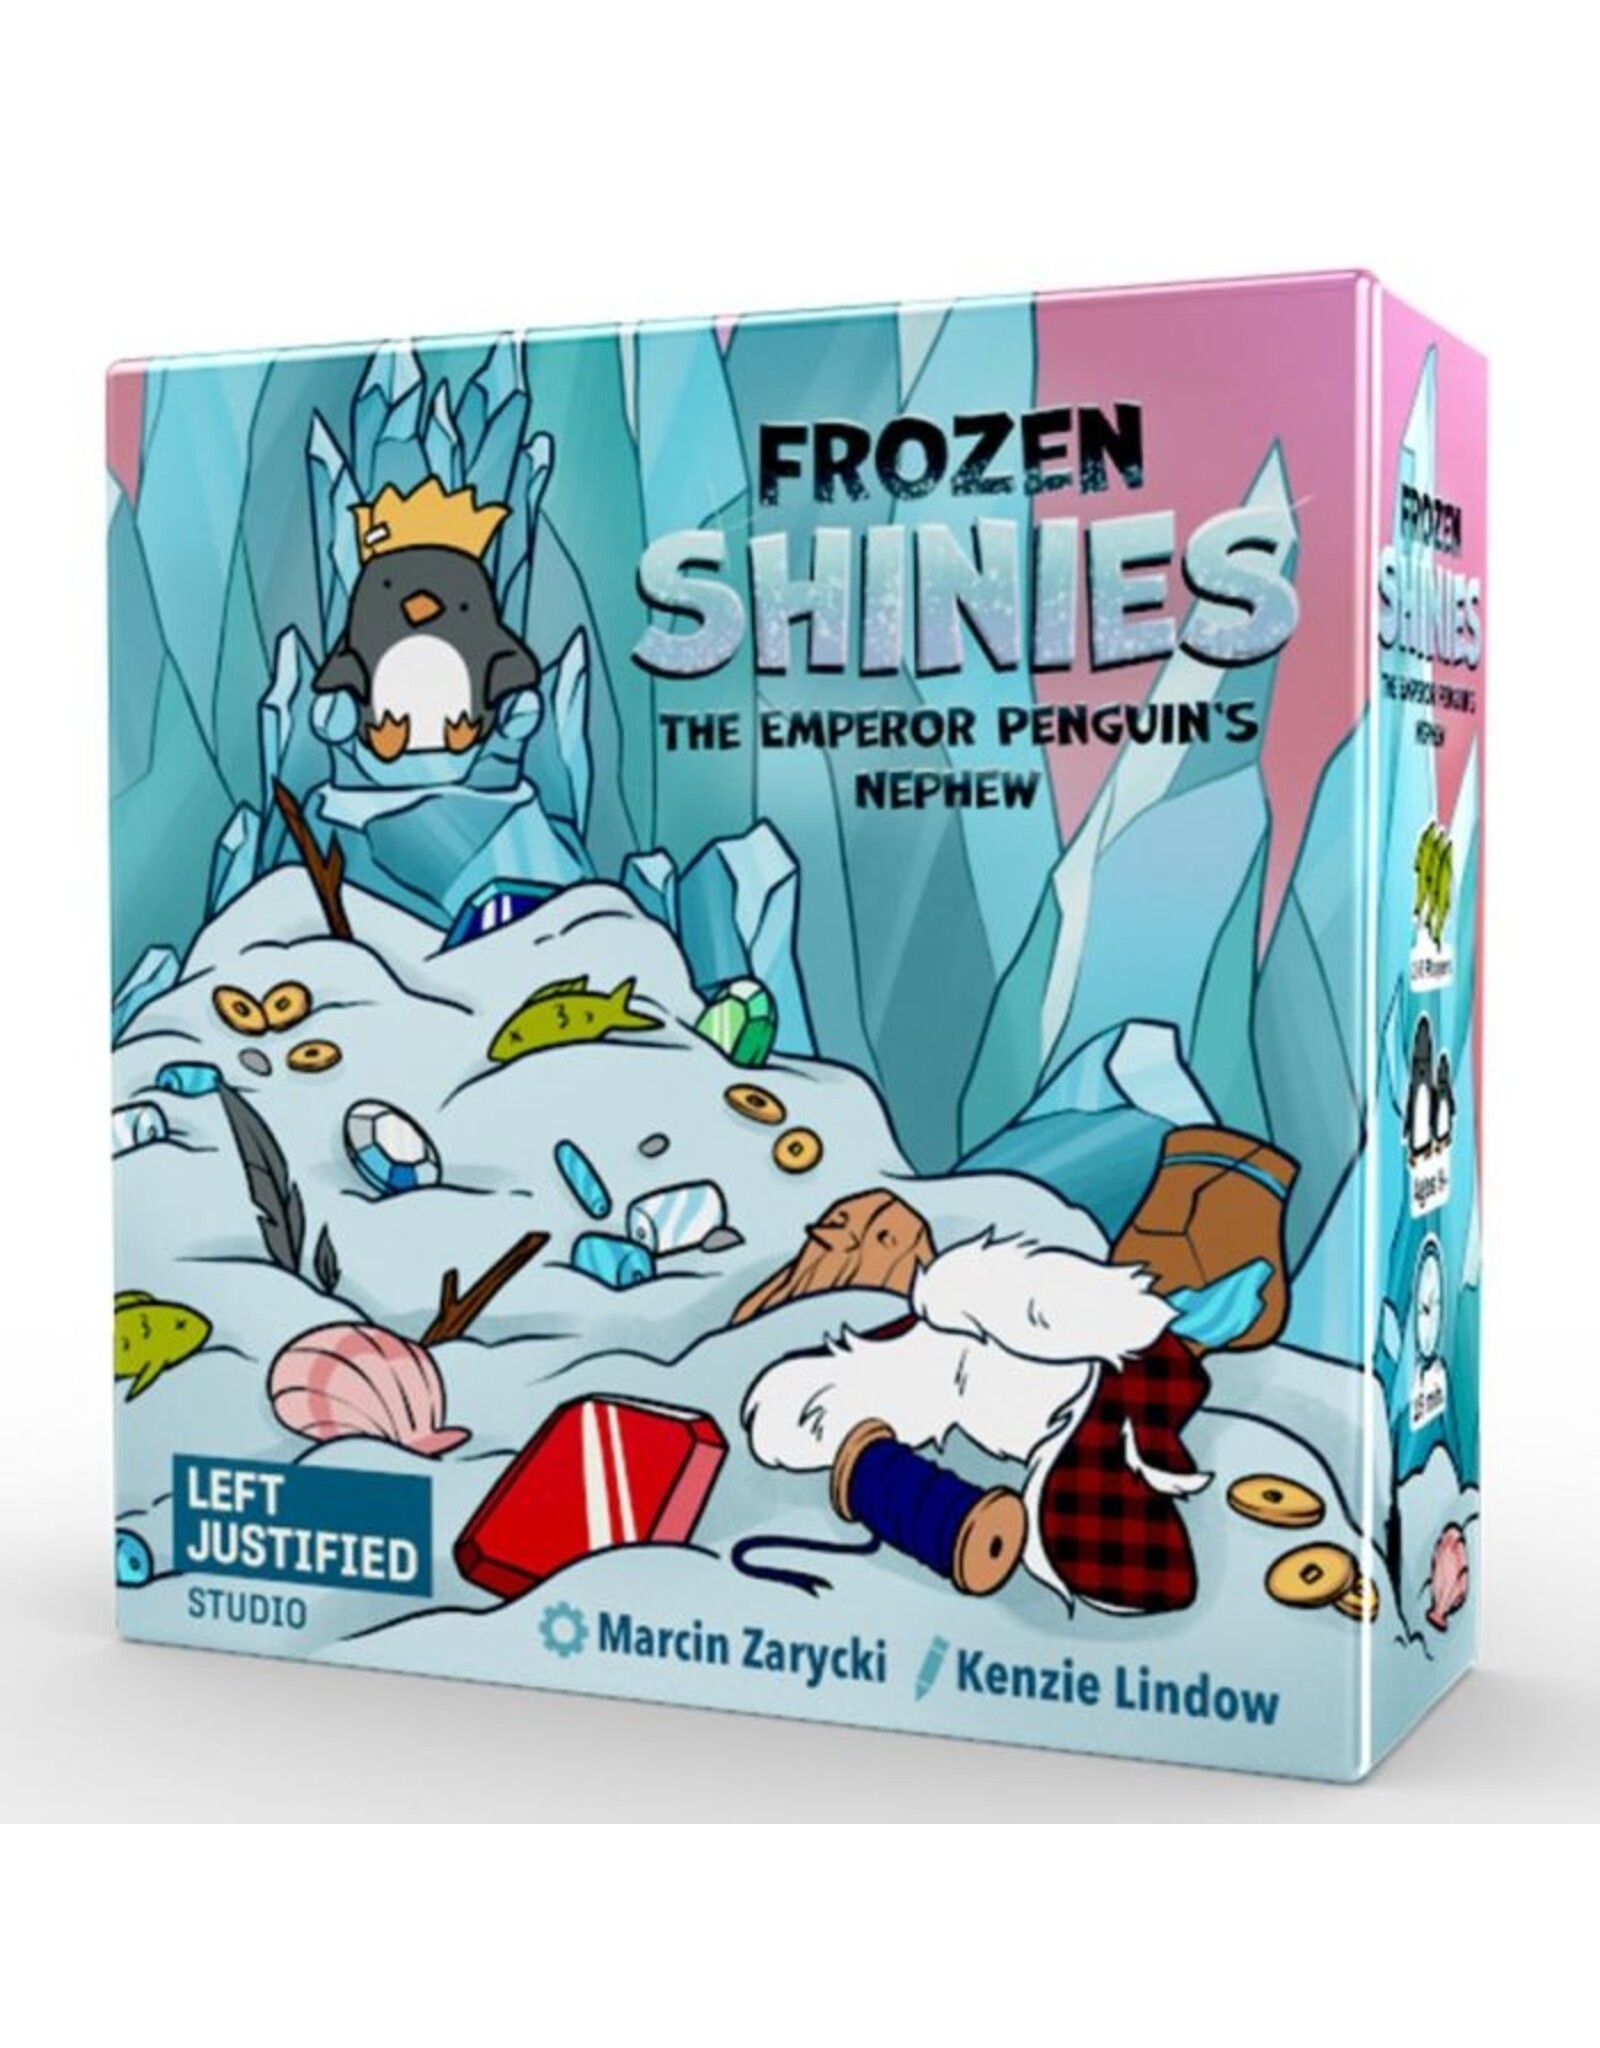 Left Justified Frozen Shinies: The Emperor Penguin's Nephew